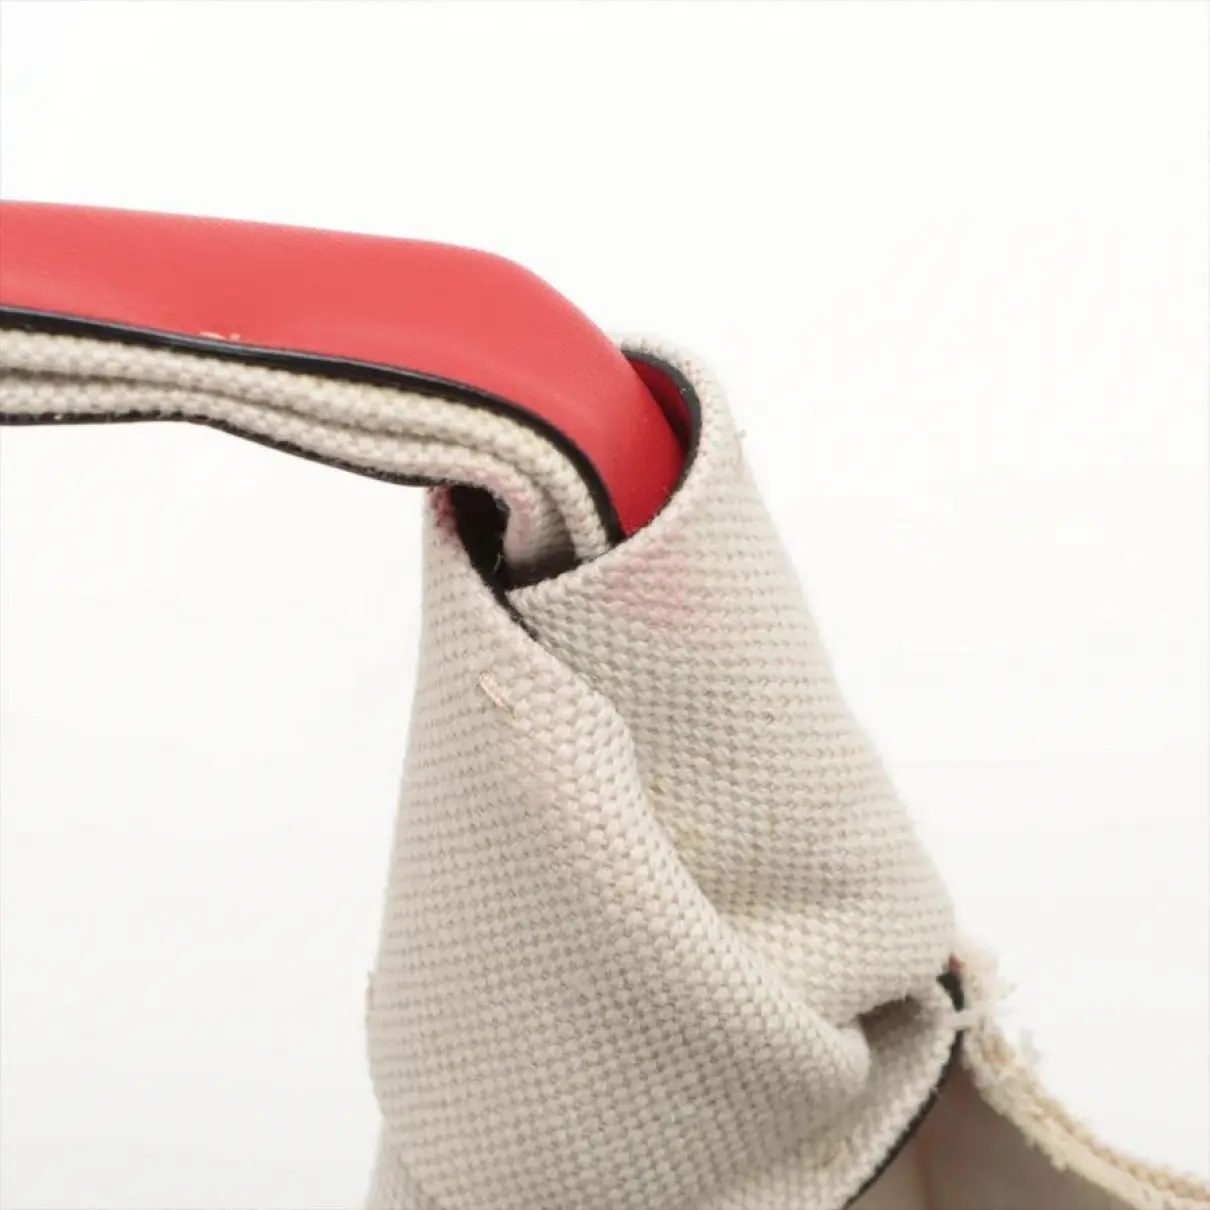 Atelier leather handbag Valentino Garavani